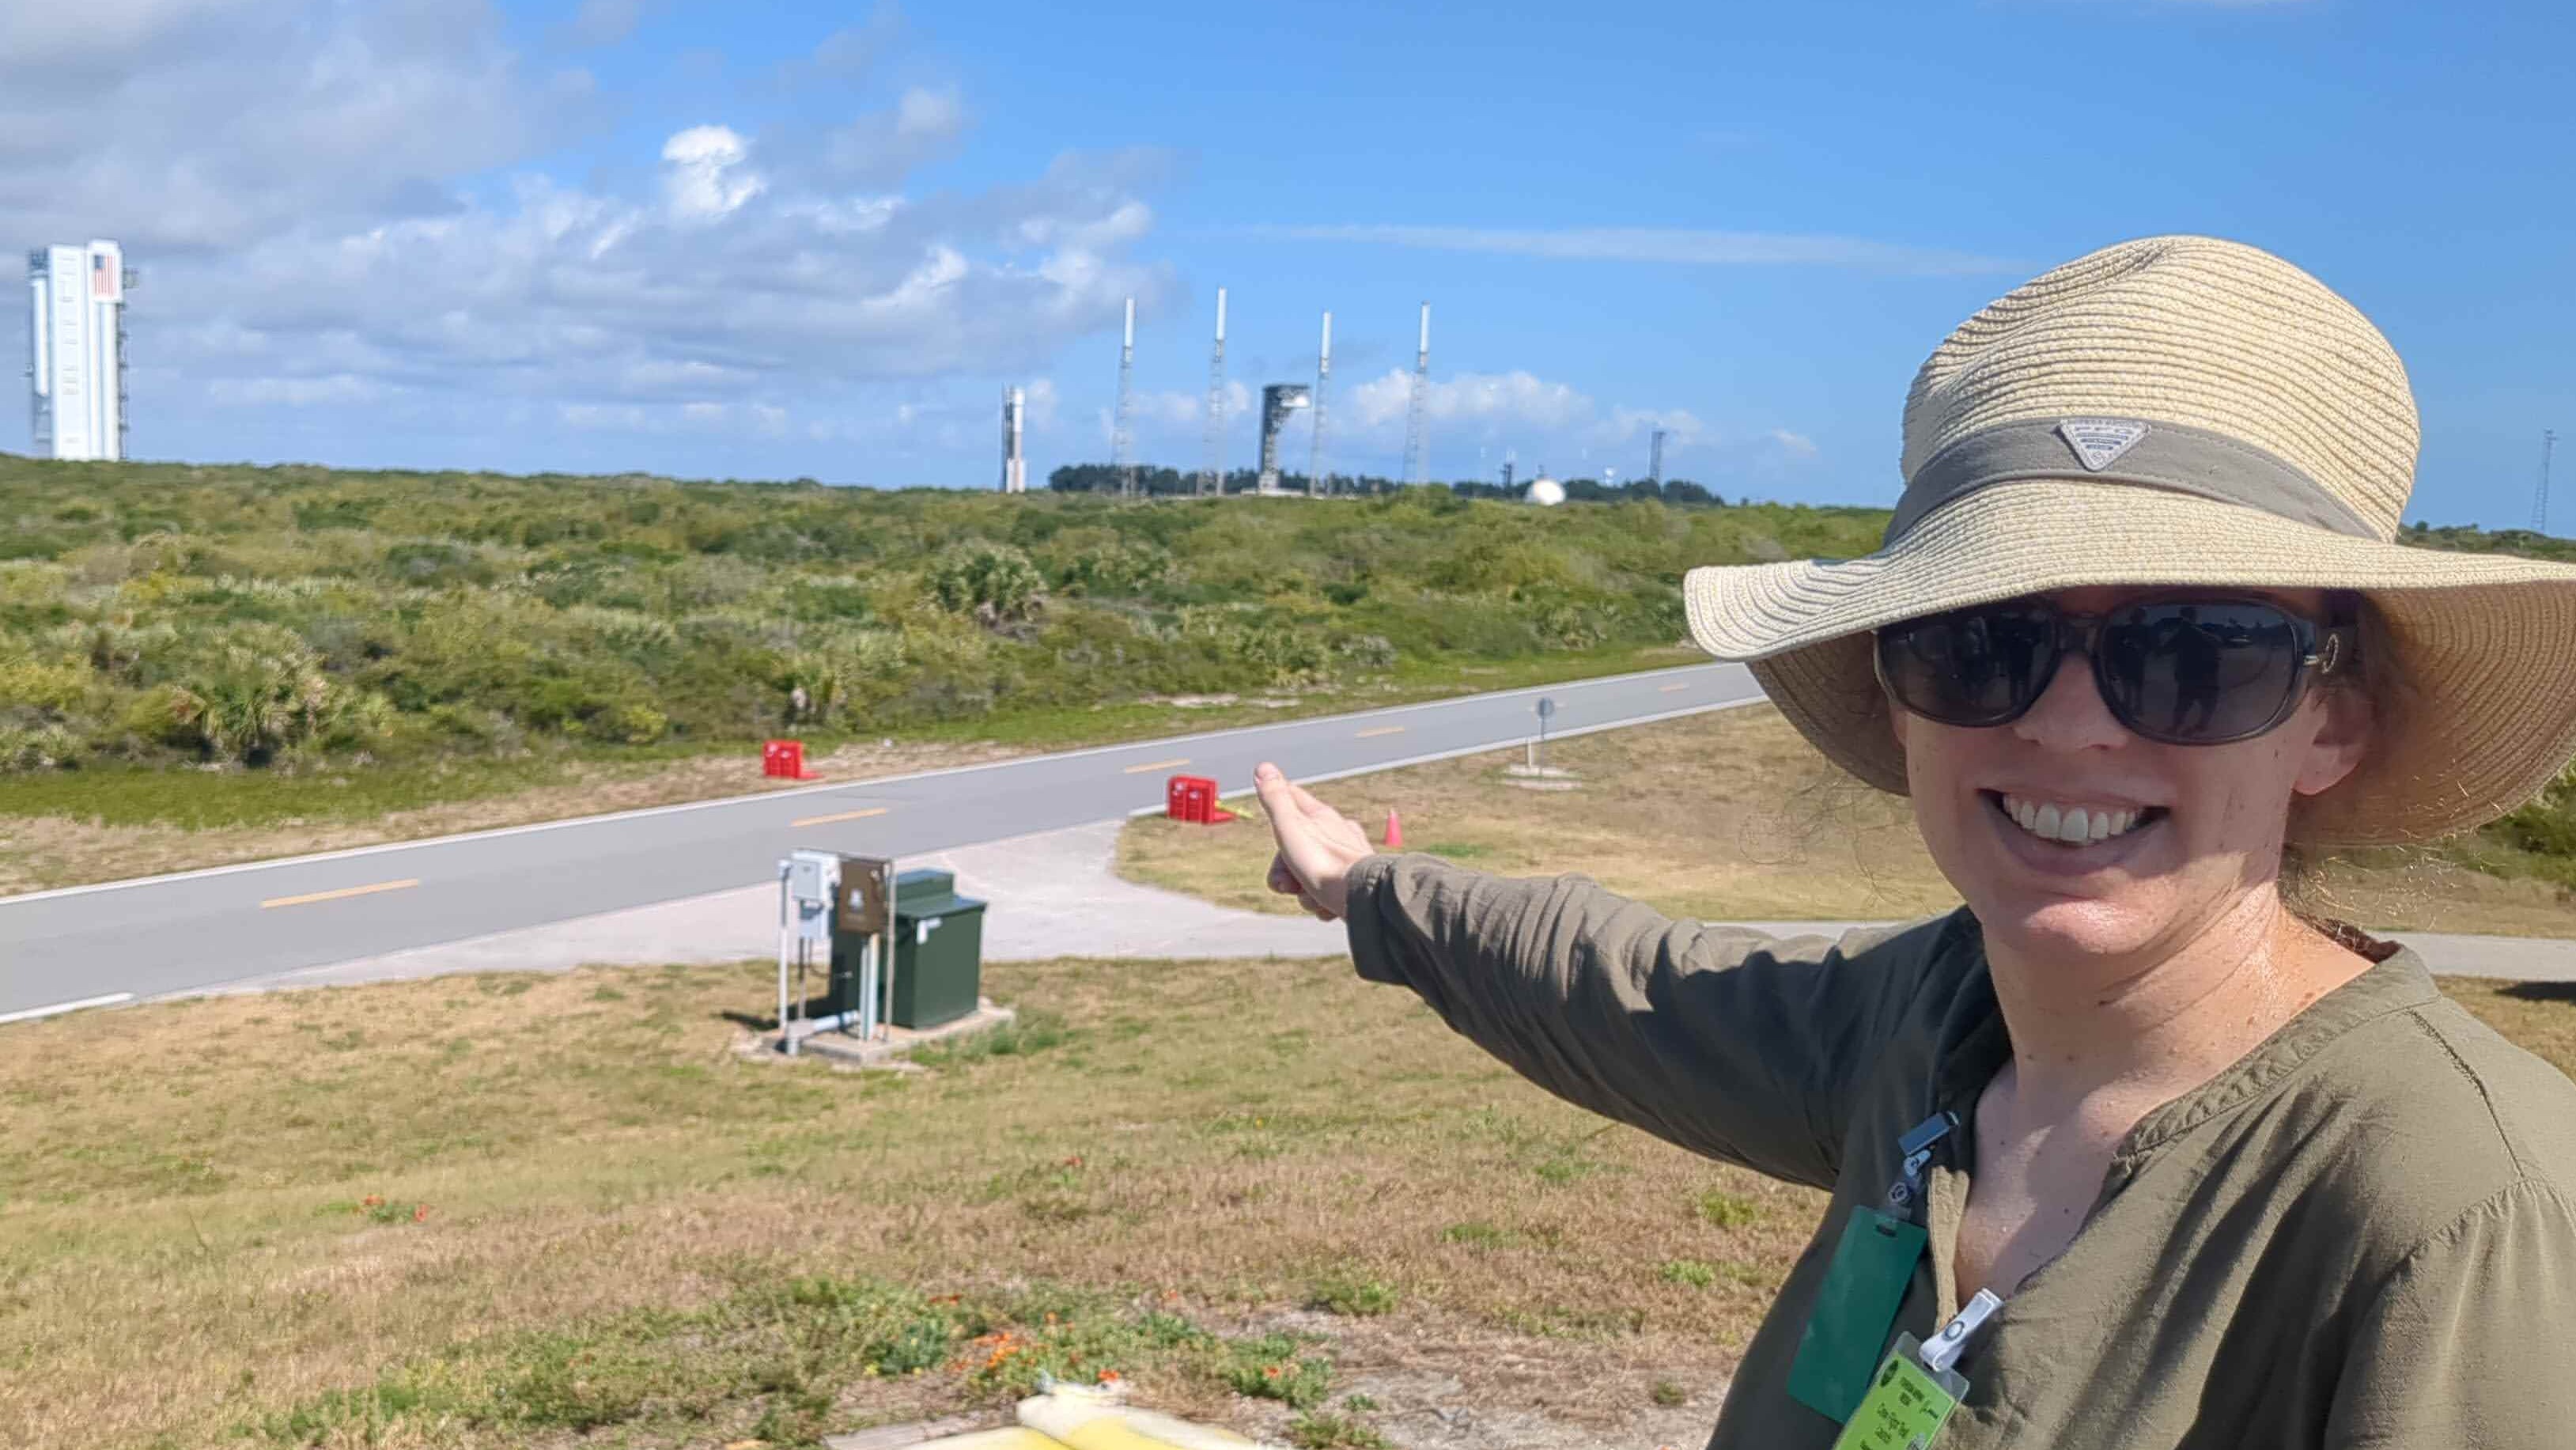 Lachende vrouw met een grote hoed en zonnebril.  Ze wijst aan de overkant van de weg naar een raket en een lanceerplatform in de verte op de achtergrond